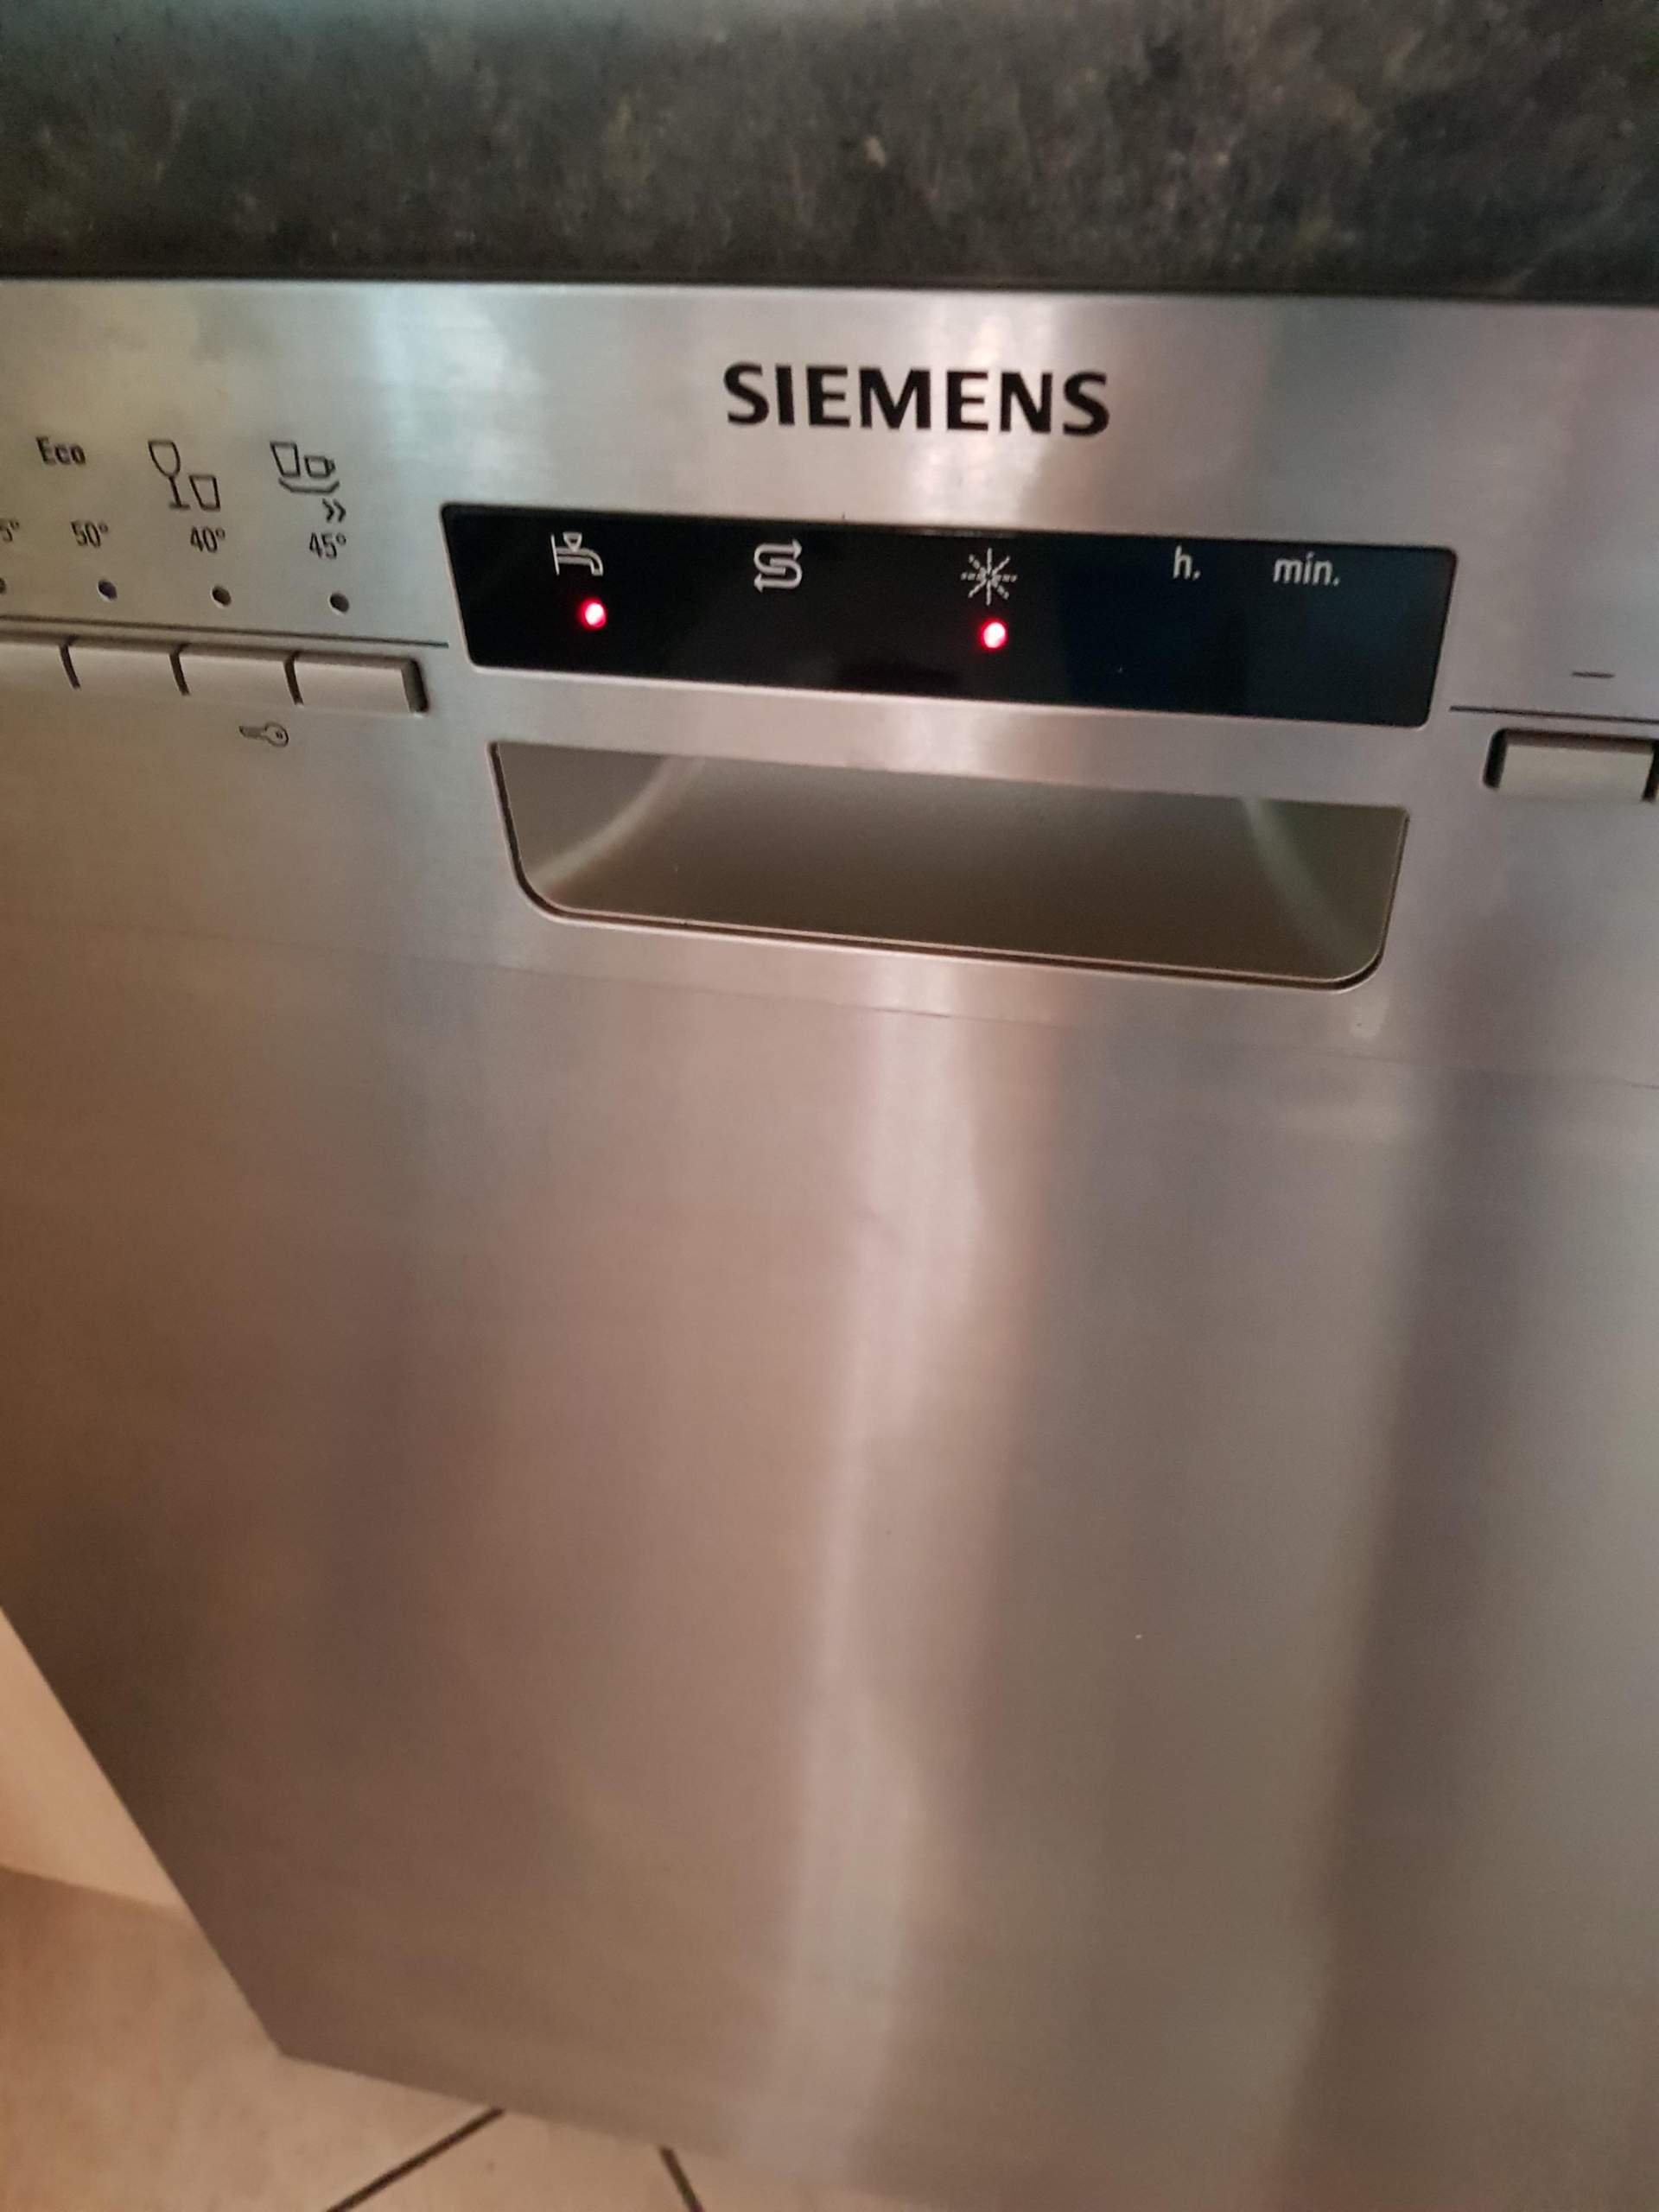 Siemens Spulmaschine Wasserhahn Symbol www inf inet com